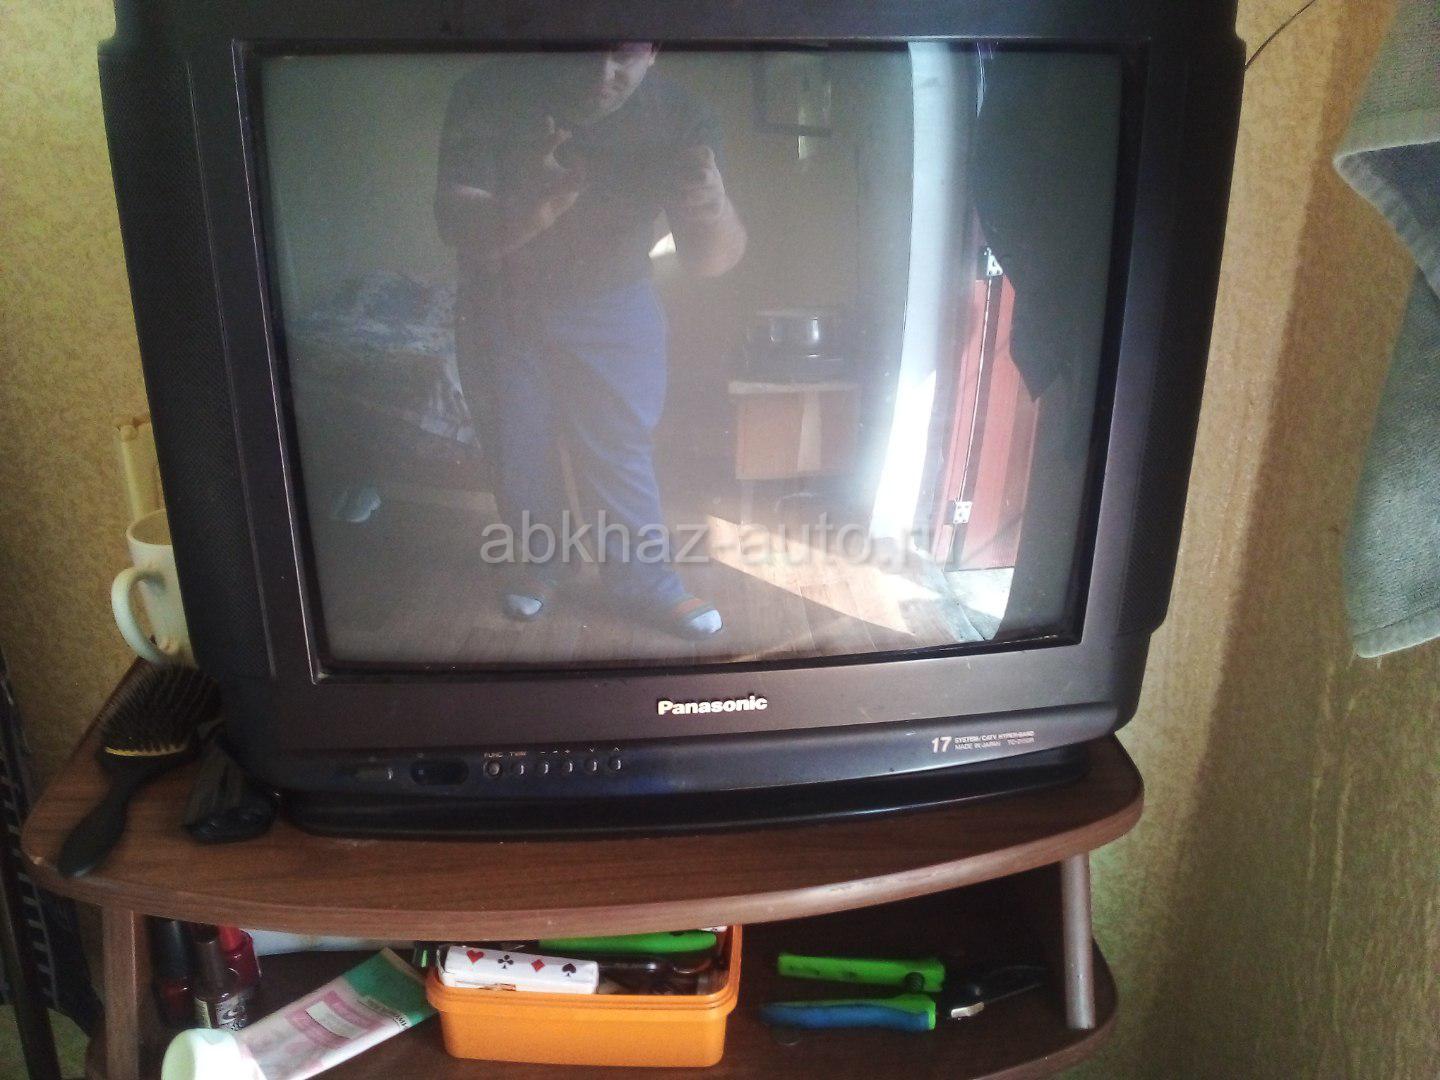 Телевизор ростов на дону цена. Абхаз авто плазменный телевизор на продажу. Абхаз авто объявления продажи телевизоров самсунг.